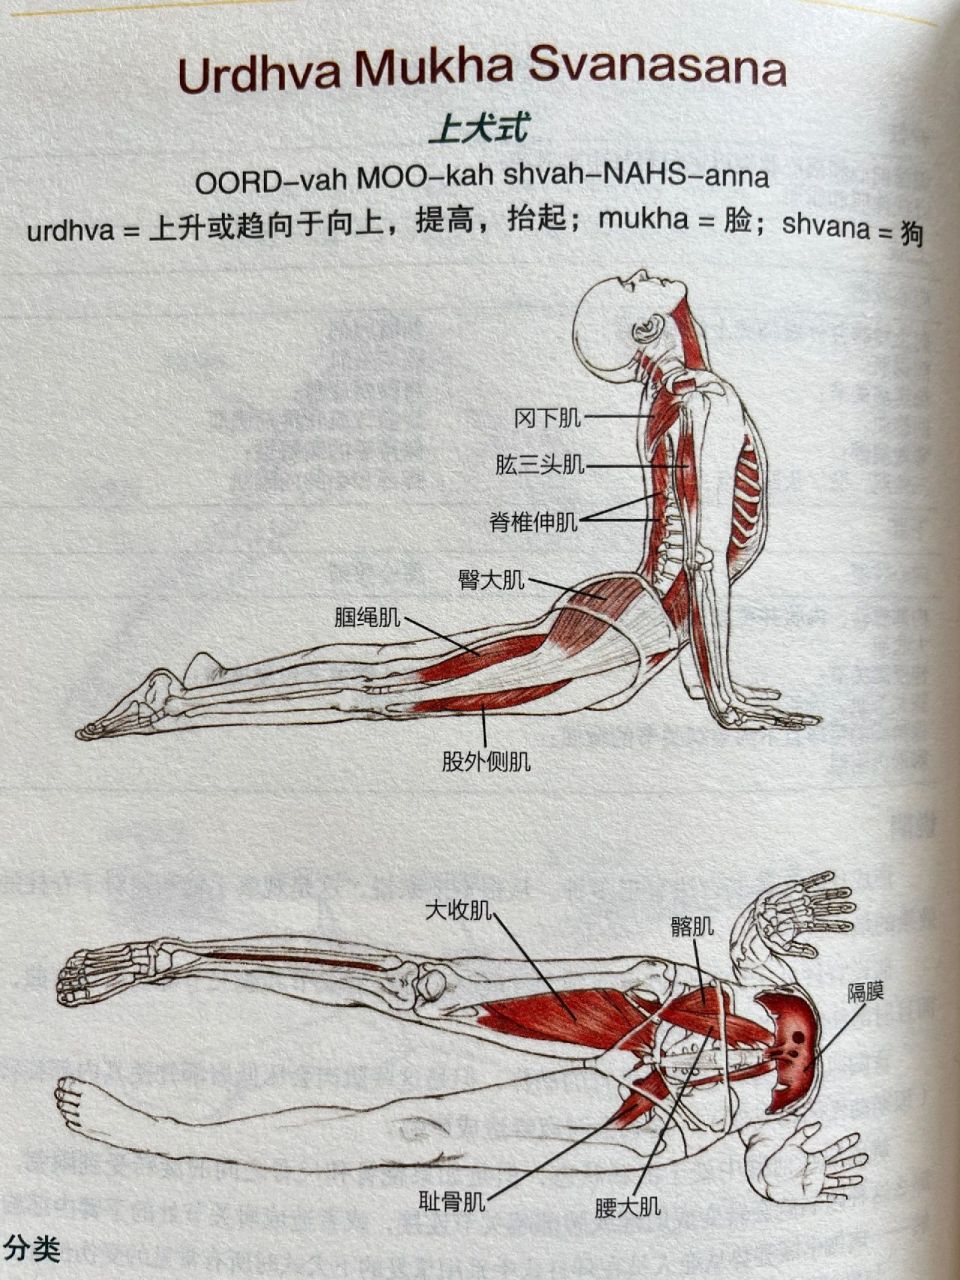 15个瑜伽基础体式解剖图,告诉你练哪瘦哪 练习不要随意模仿凹造型